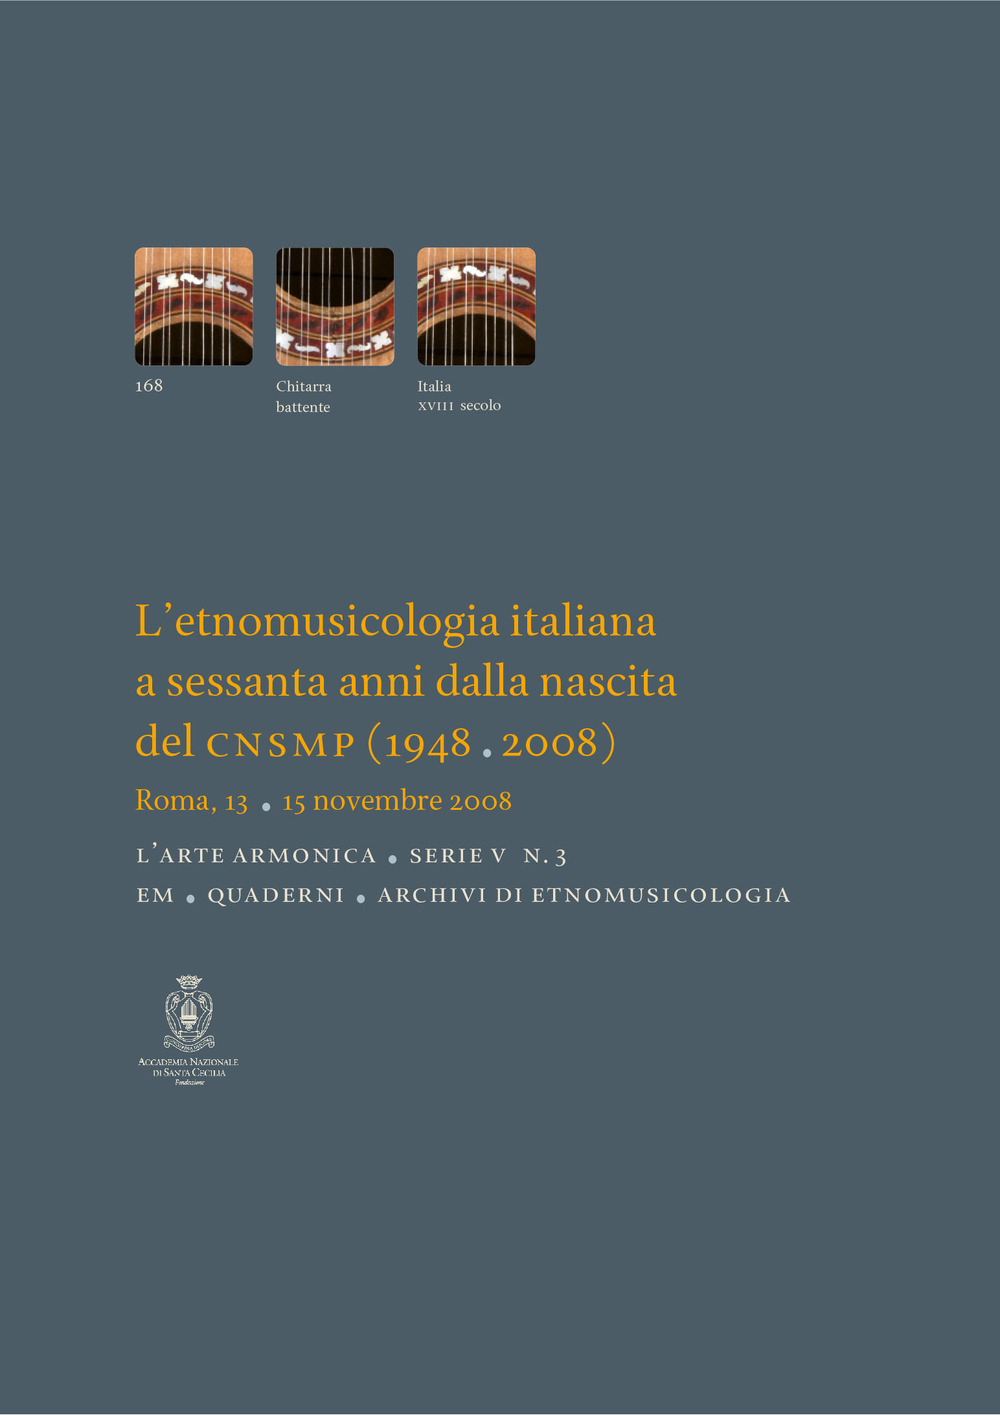 L'etnomusicologia italiana a sessanta anni dalla nascita del CNSMP (1948-2008). Atti del Convegno (Roma, 13-15 novembre 2008)